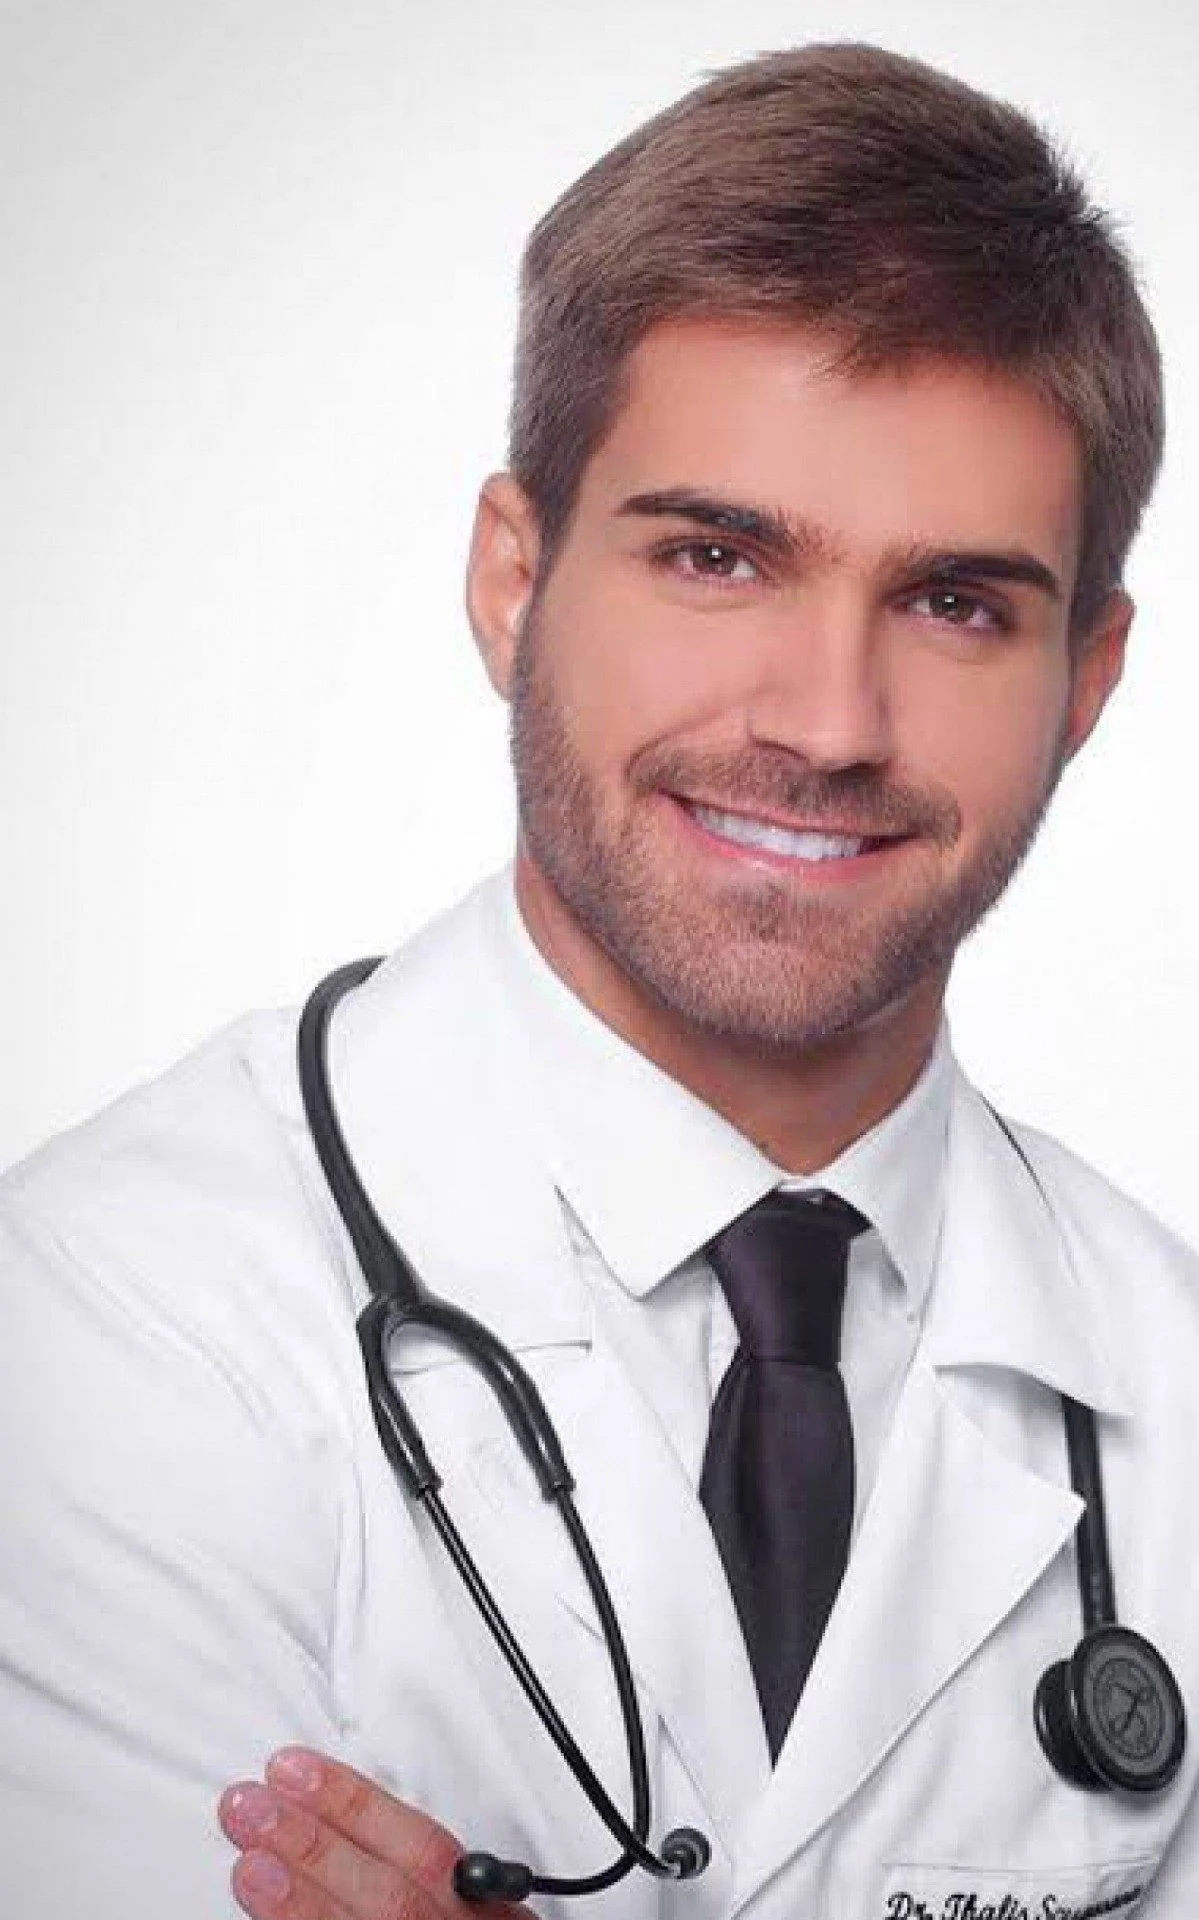 Médico pediatra Thalis Bolzan é o namoreado do governador Eduardo Leite 